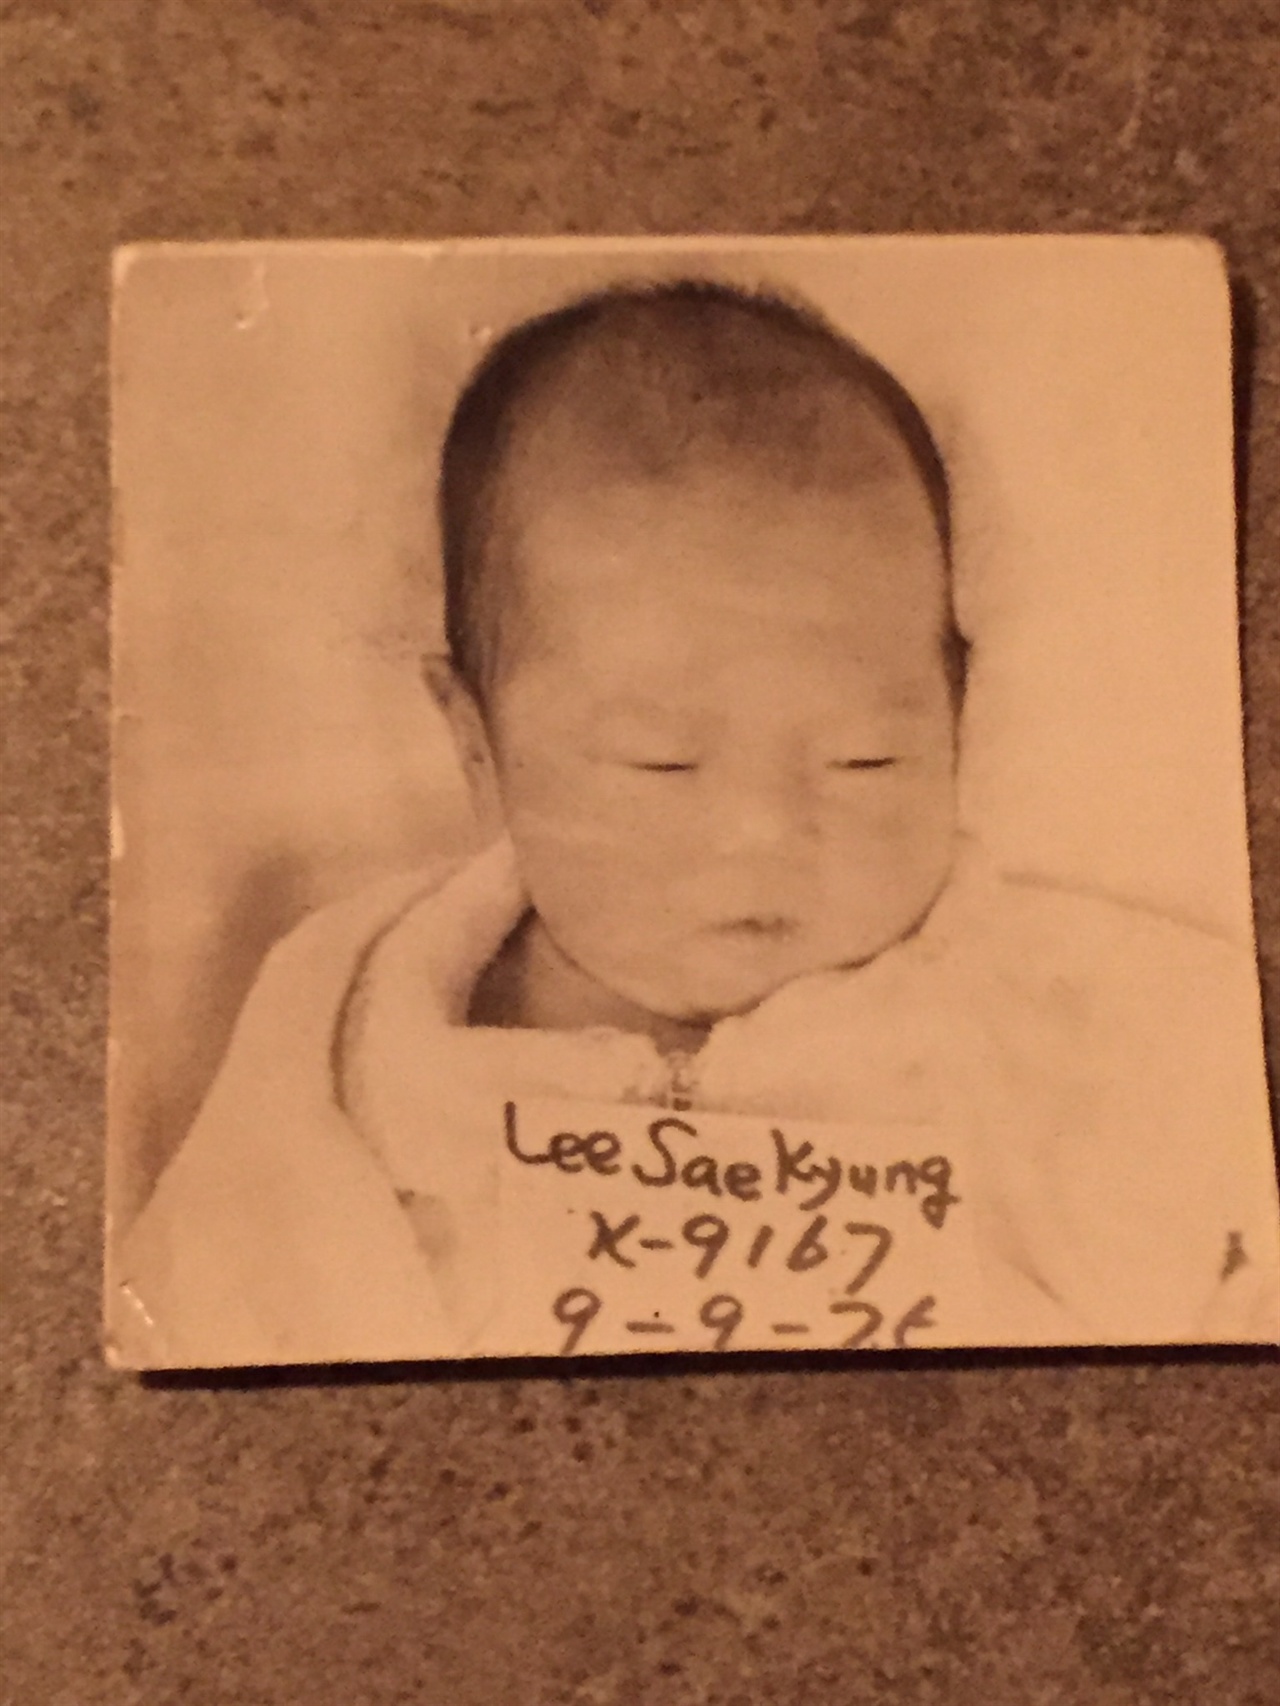 로빈 레이 멕케이는 생후 3개월에 미국으로 입양되었다